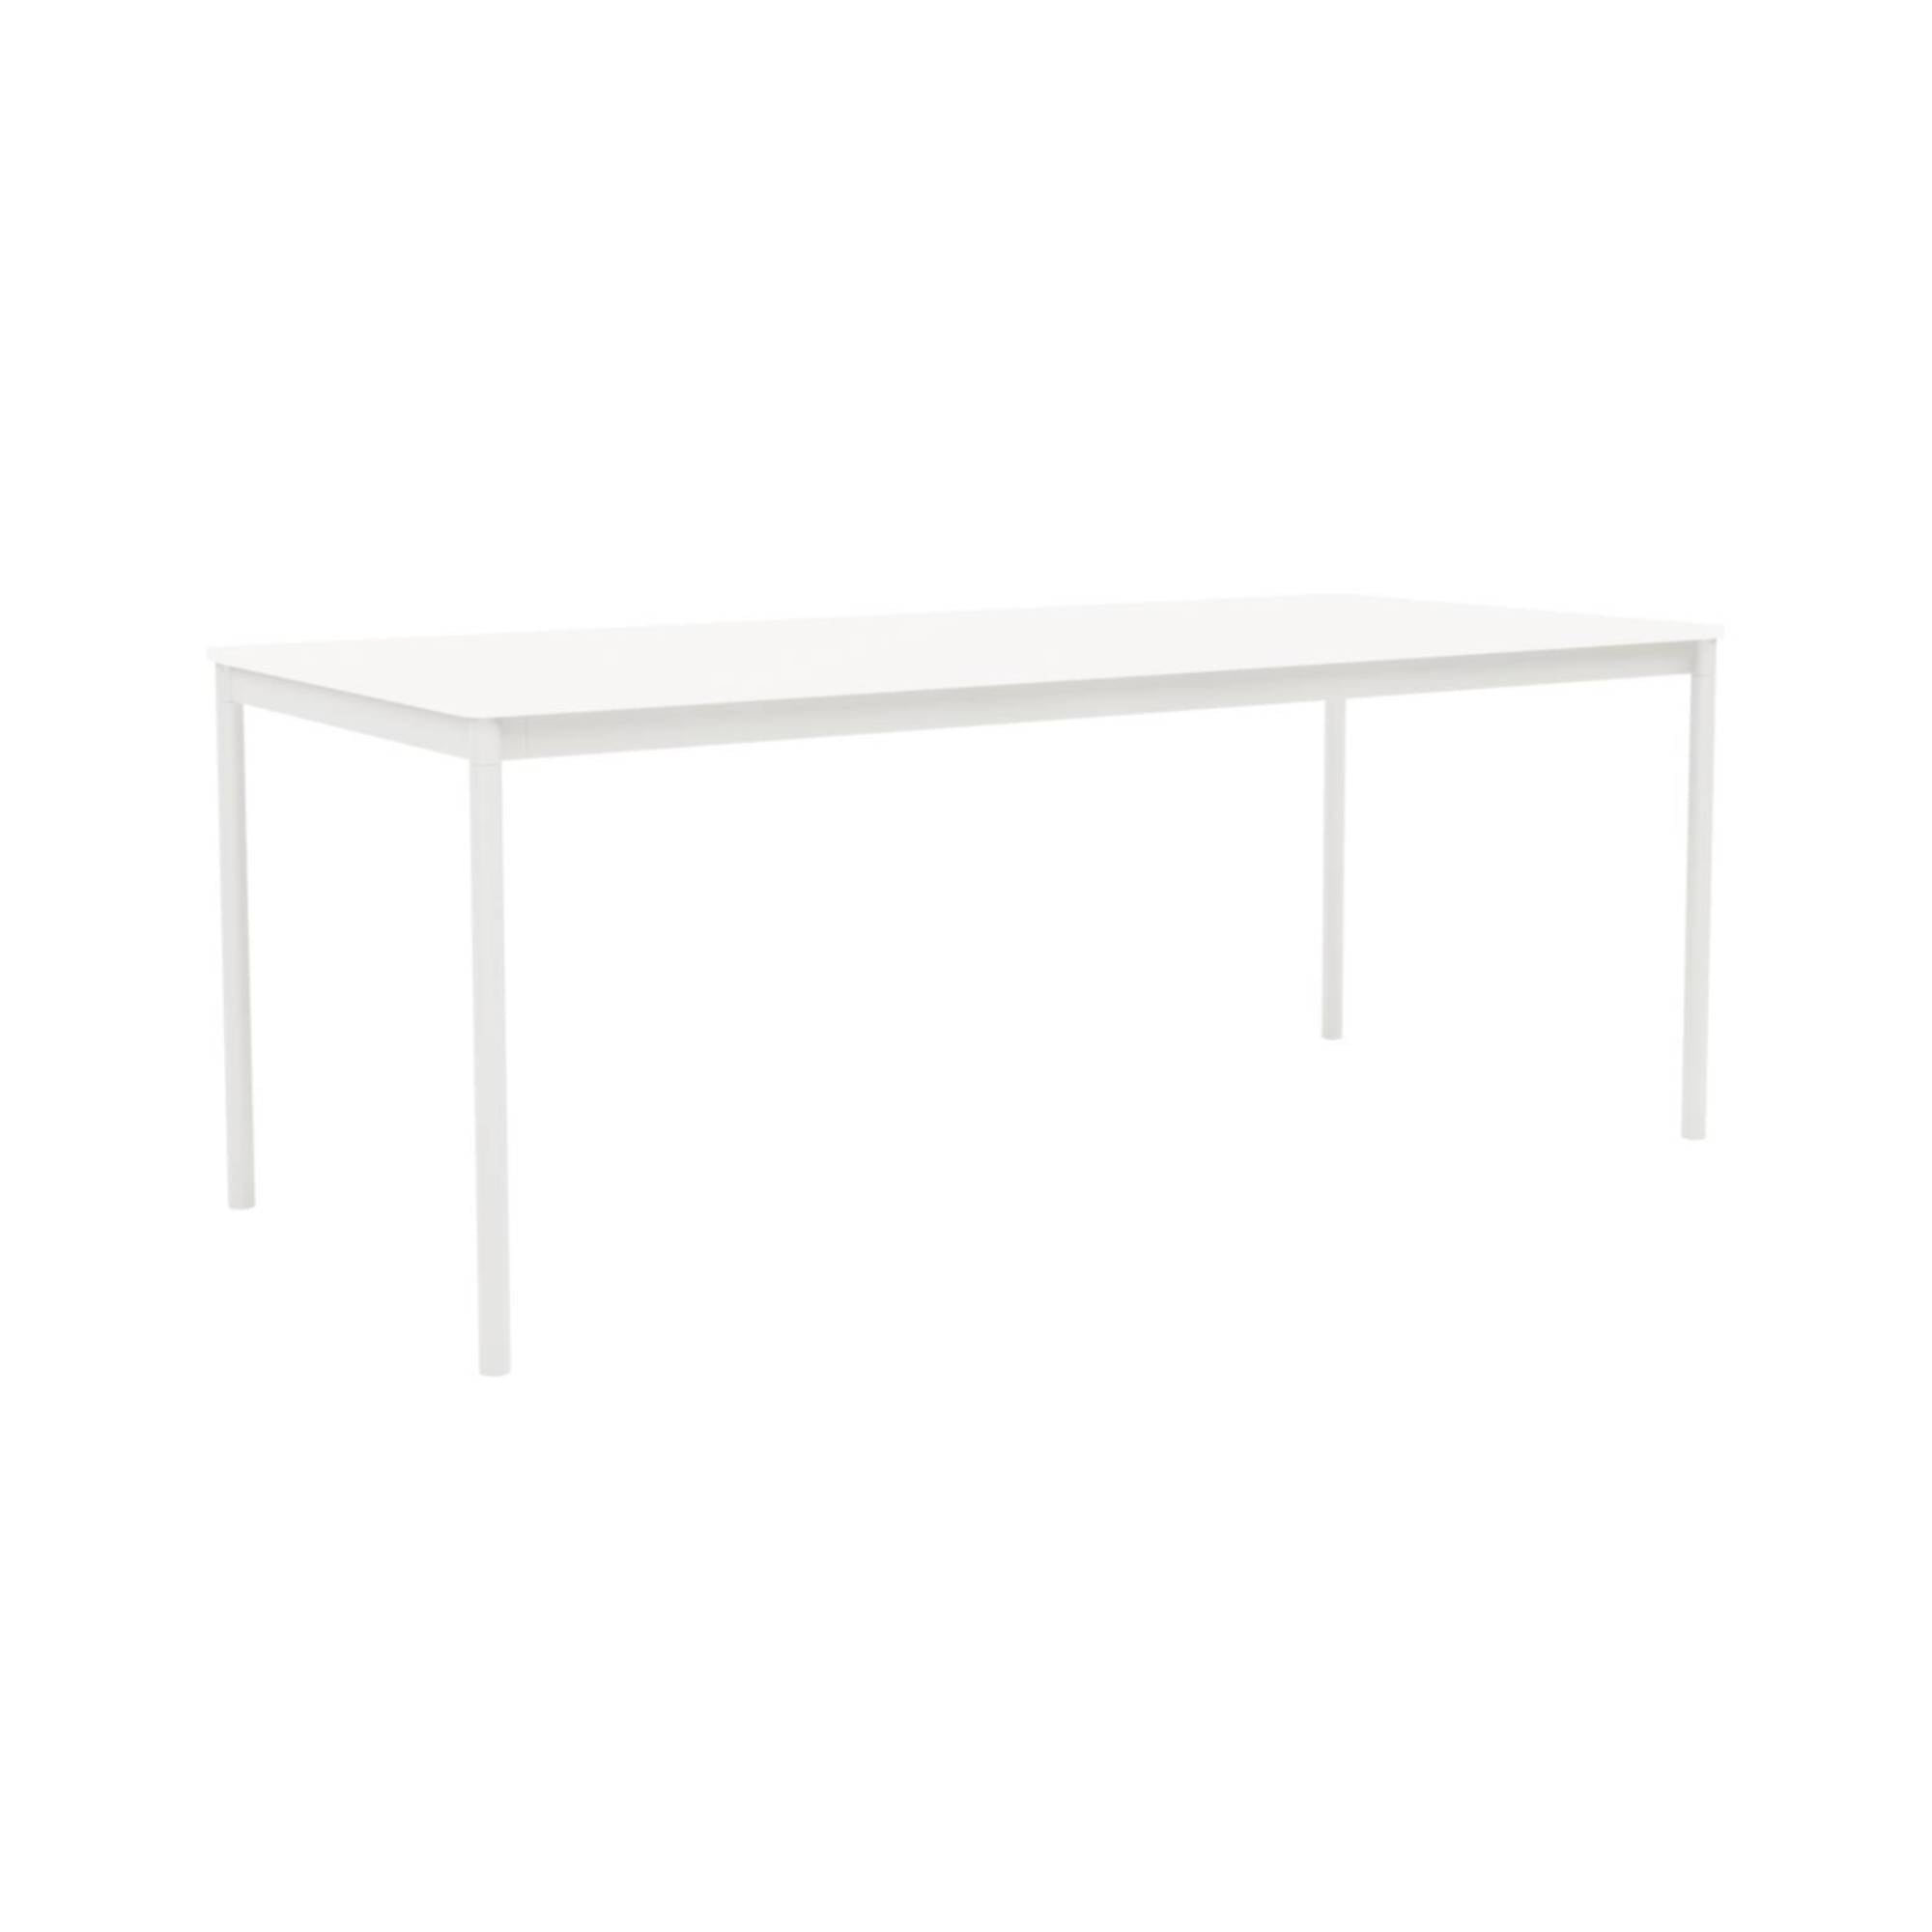 Base Table: Medium + White Laminate + ABS Edge + White